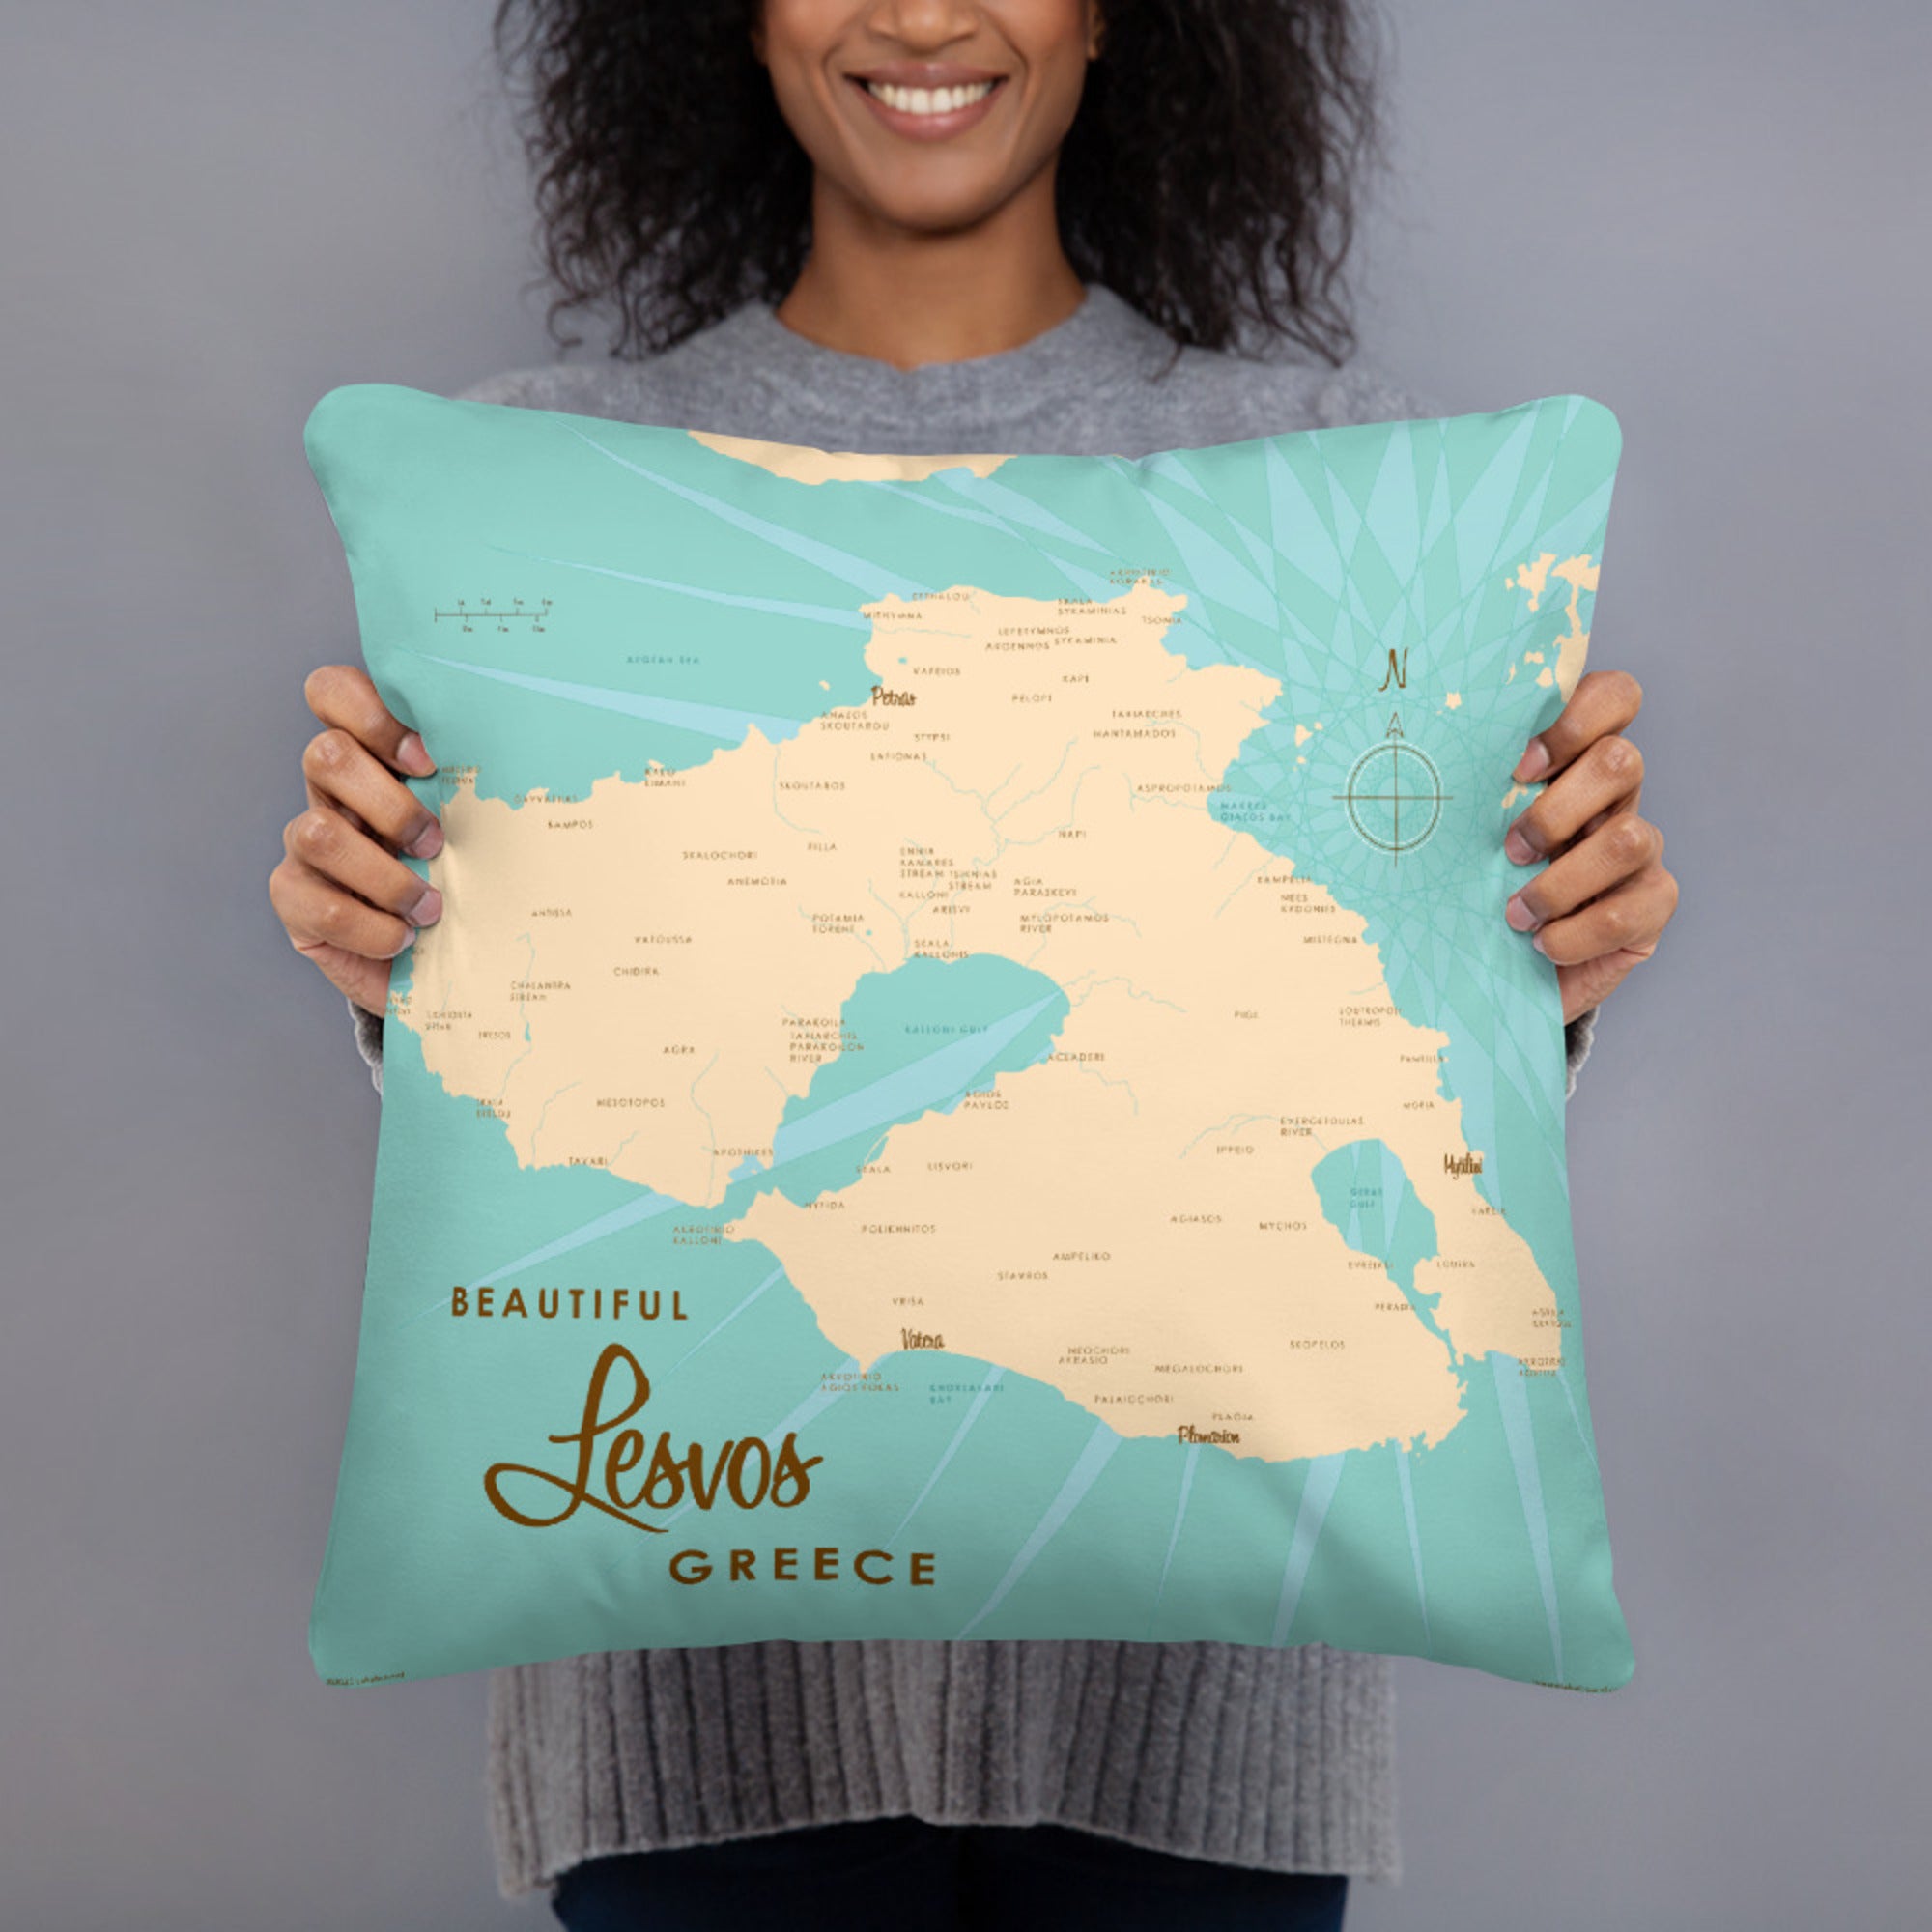 Lesvos Greece Pillow